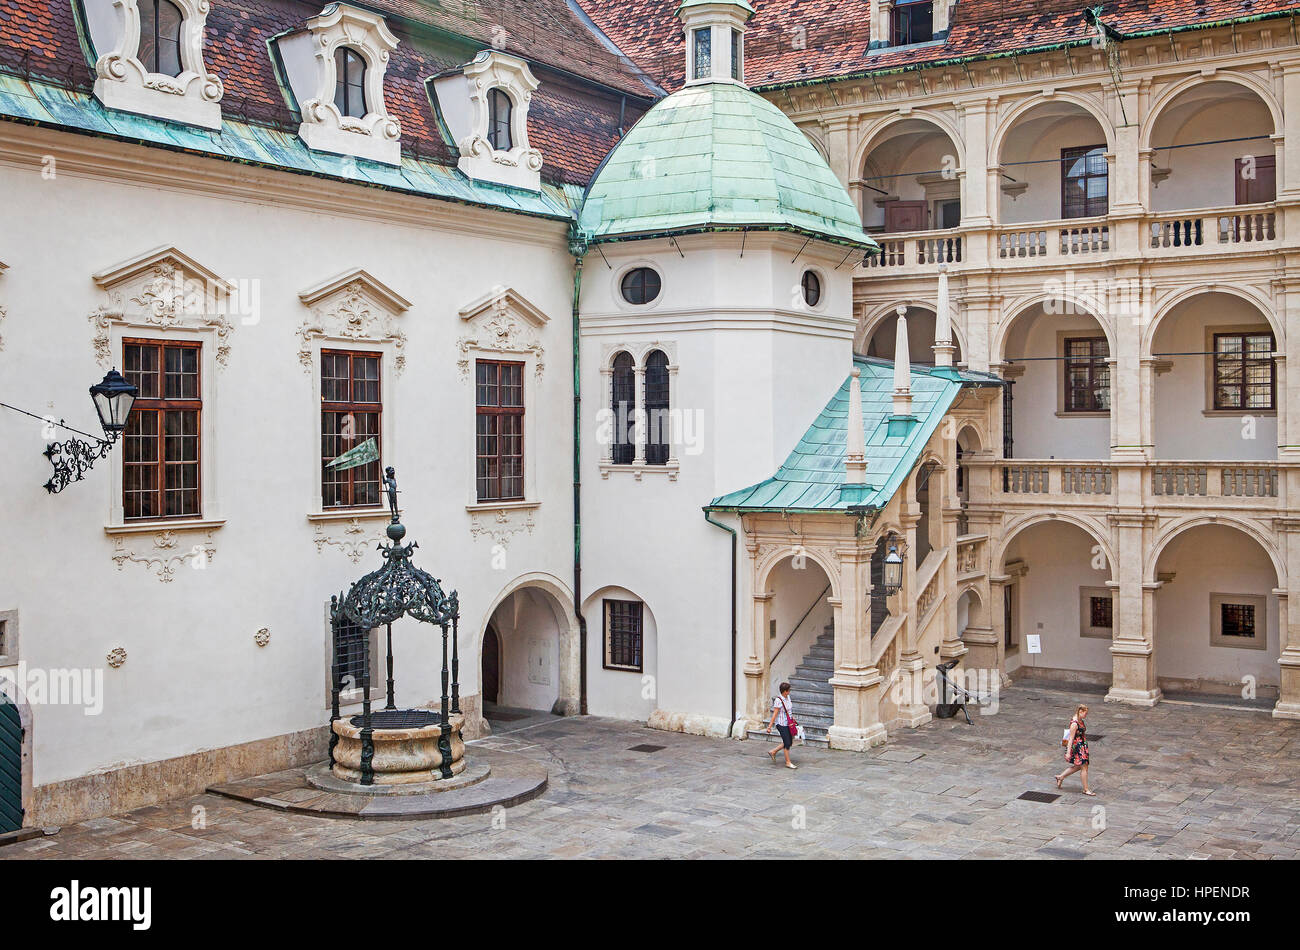 courtyard of Landhaus, Landhausshof, Graz, Austria Stock Photo